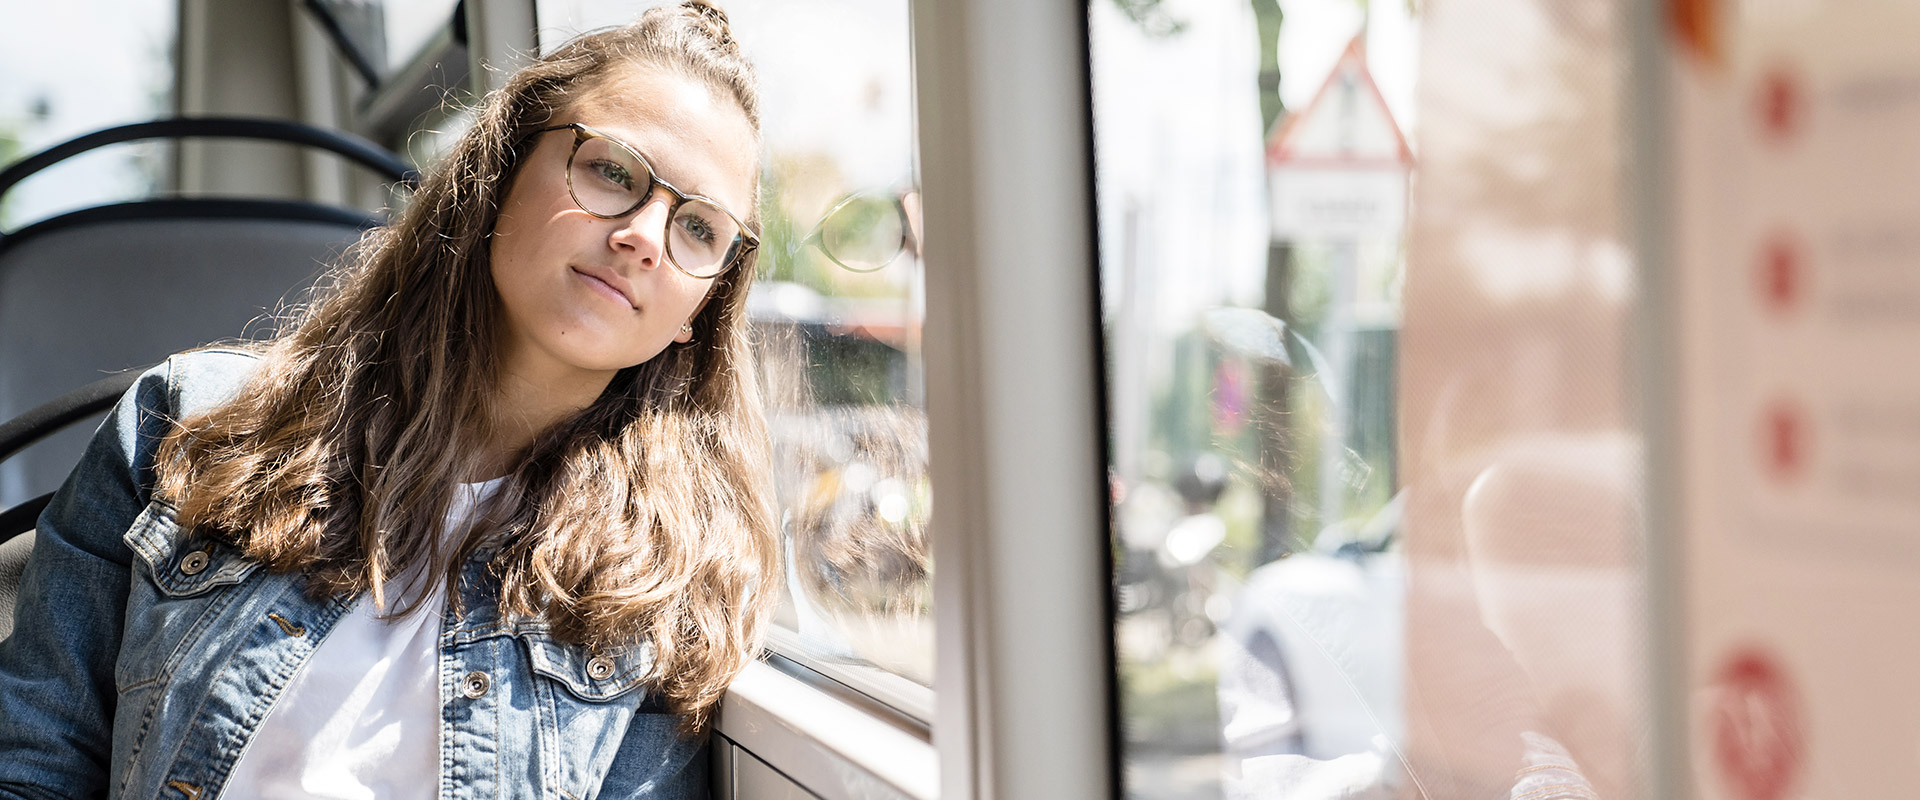 Eine junge Frau mit Brille in einem Bus sitzend. Sie lehnt ihren Kopf an die Scheibe.